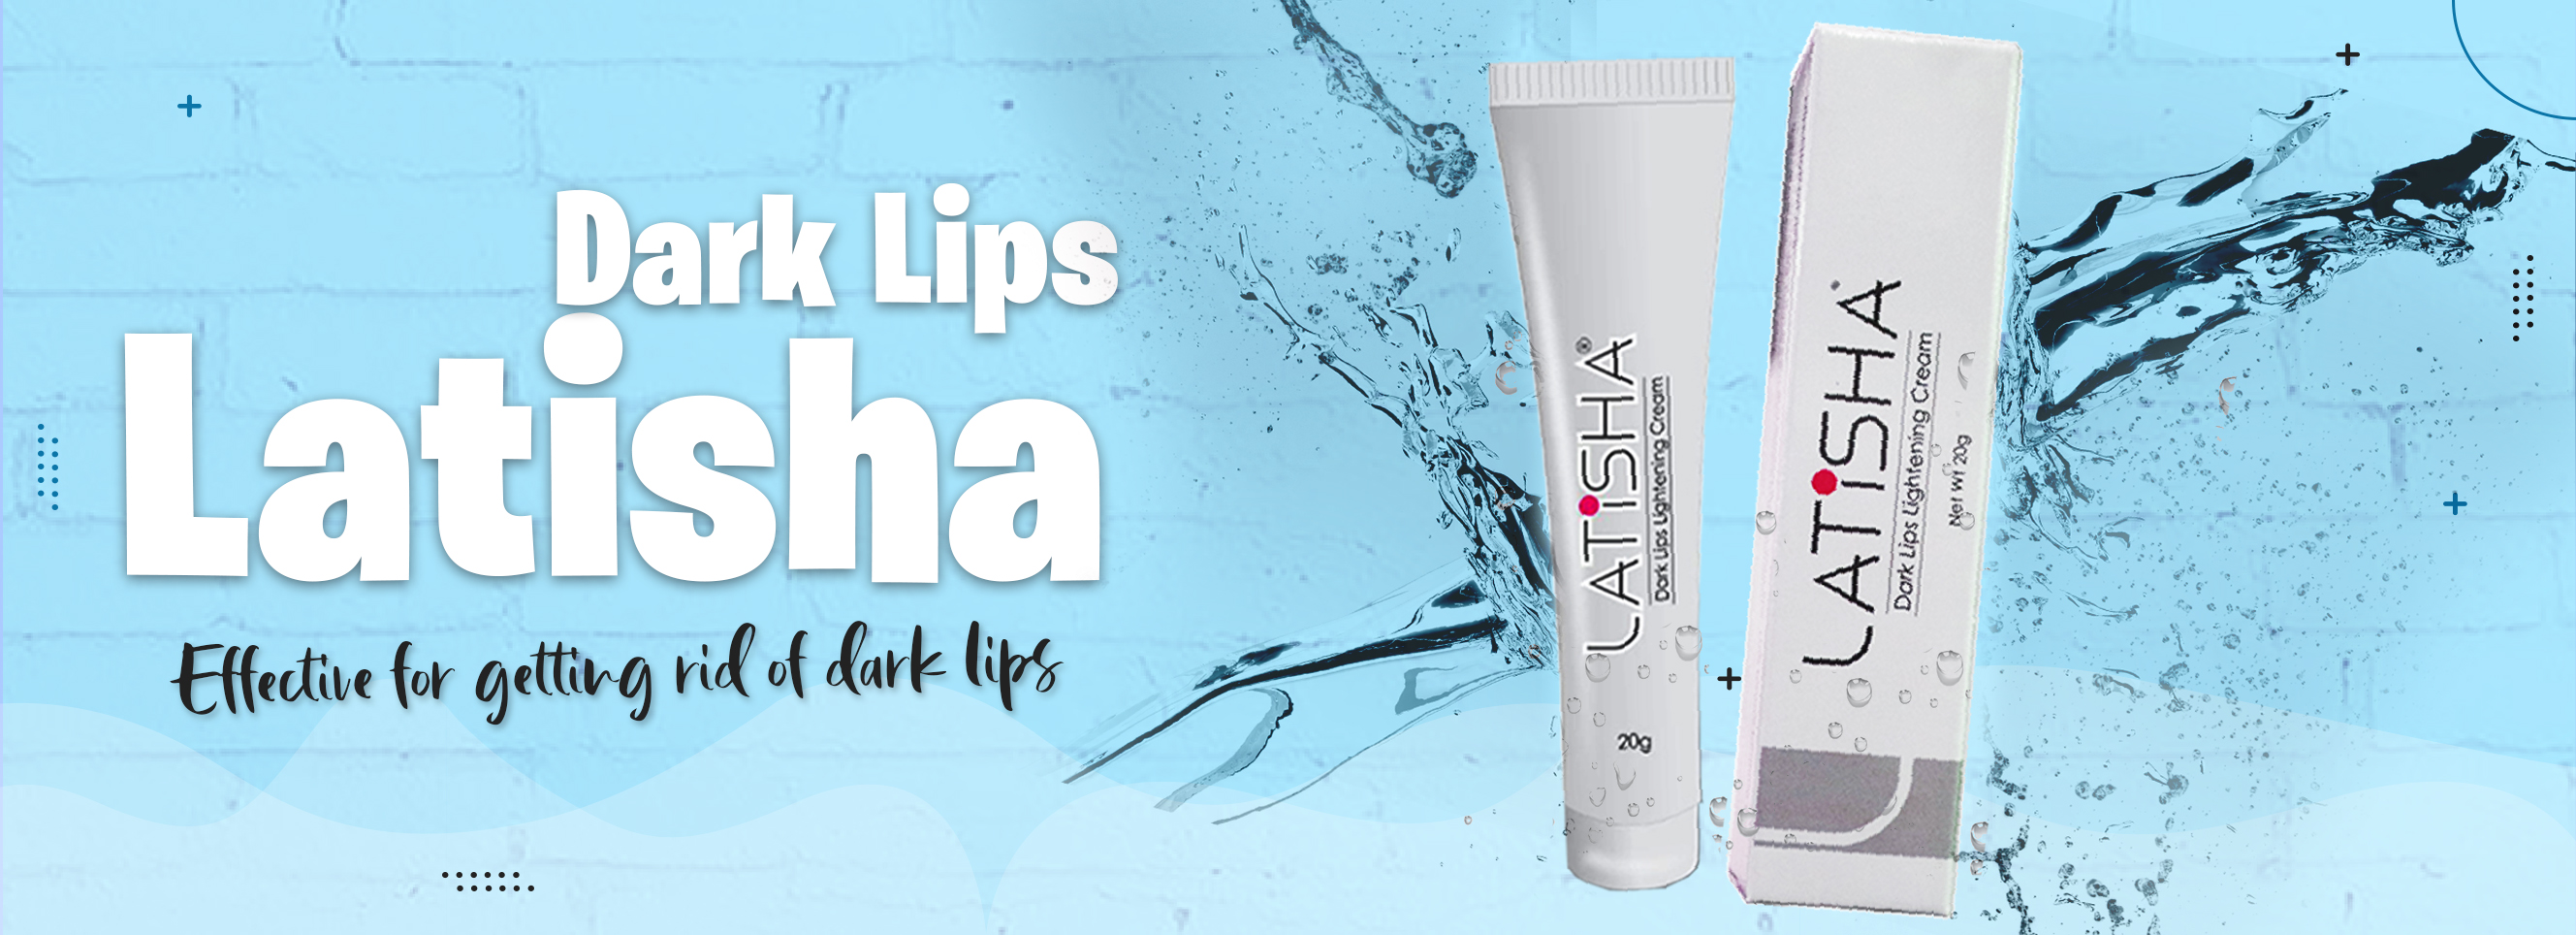 Latisha Dark Lips Lightening Cream